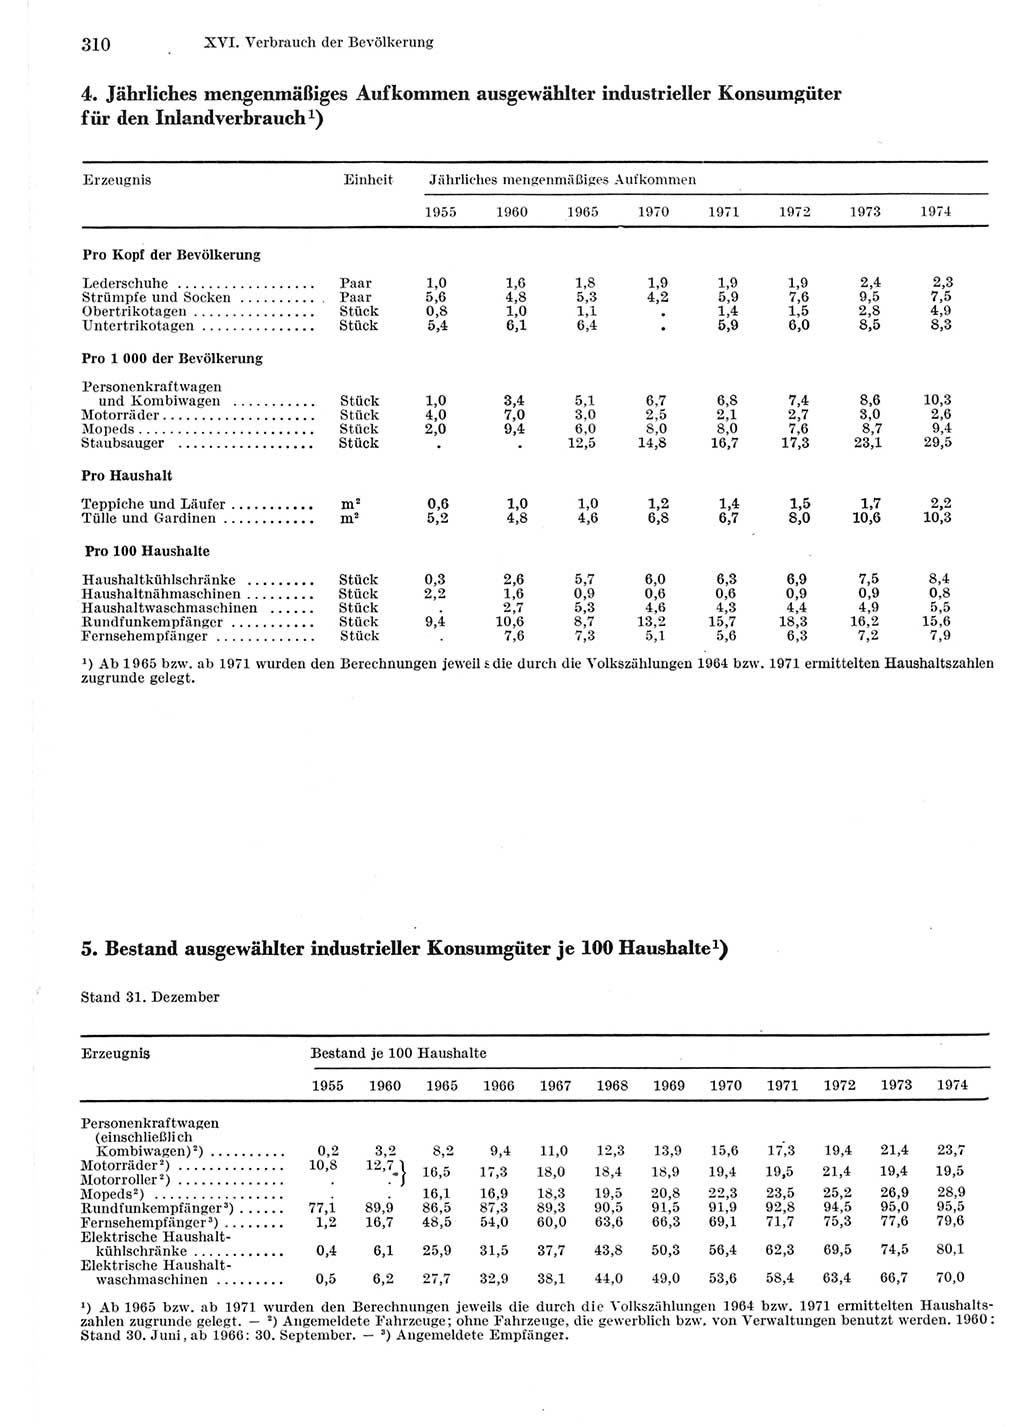 Statistisches Jahrbuch der Deutschen Demokratischen Republik (DDR) 1975, Seite 310 (Stat. Jb. DDR 1975, S. 310)